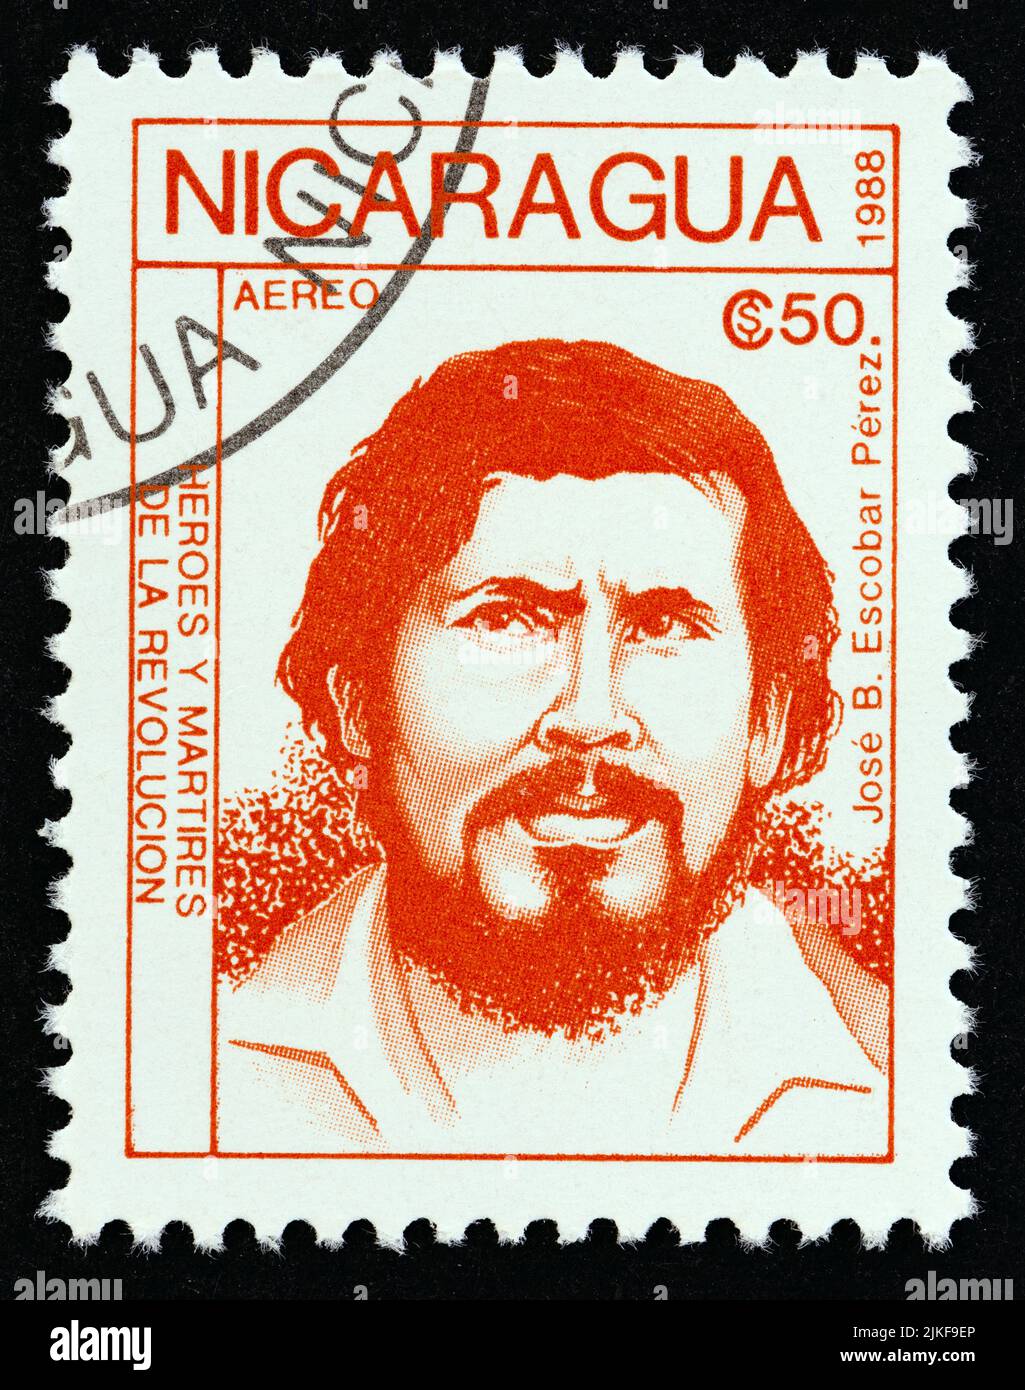 NICARAGUA - UM 1988: Eine in Nicaragua gedruckte Briefmarke aus der Ausgabe 'revolutionäre' zeigt Jose B. Escobar Perez, um 1988. Stockfoto